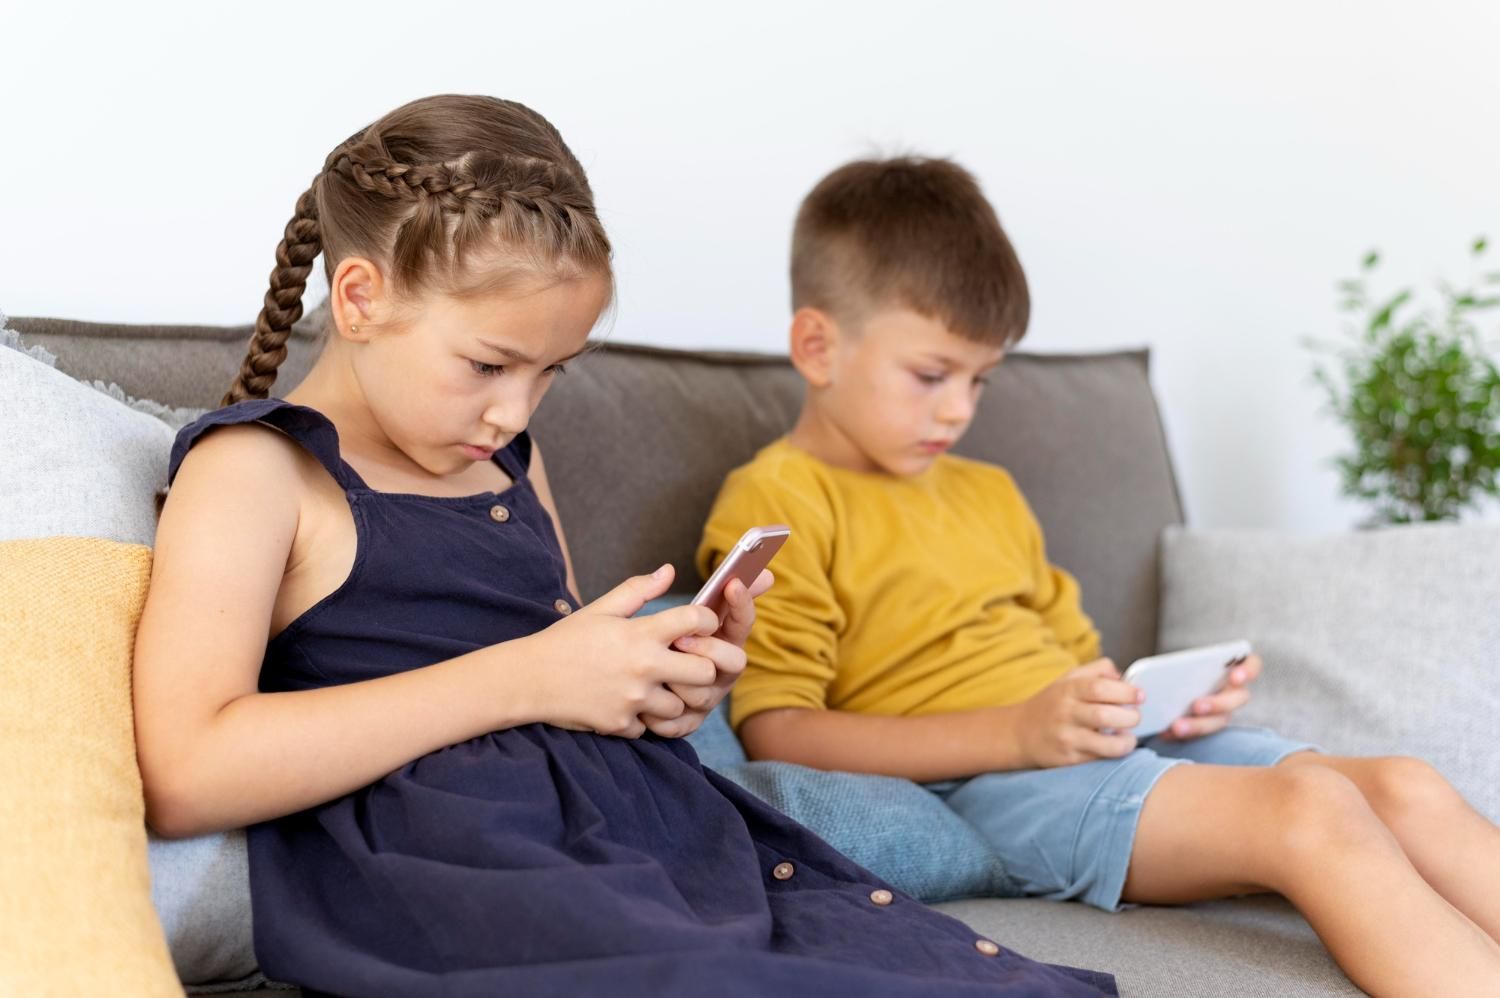 Гаджеты, интернет и программирование для детей: как совместить приятное с полезным - Новости технологий - Техно